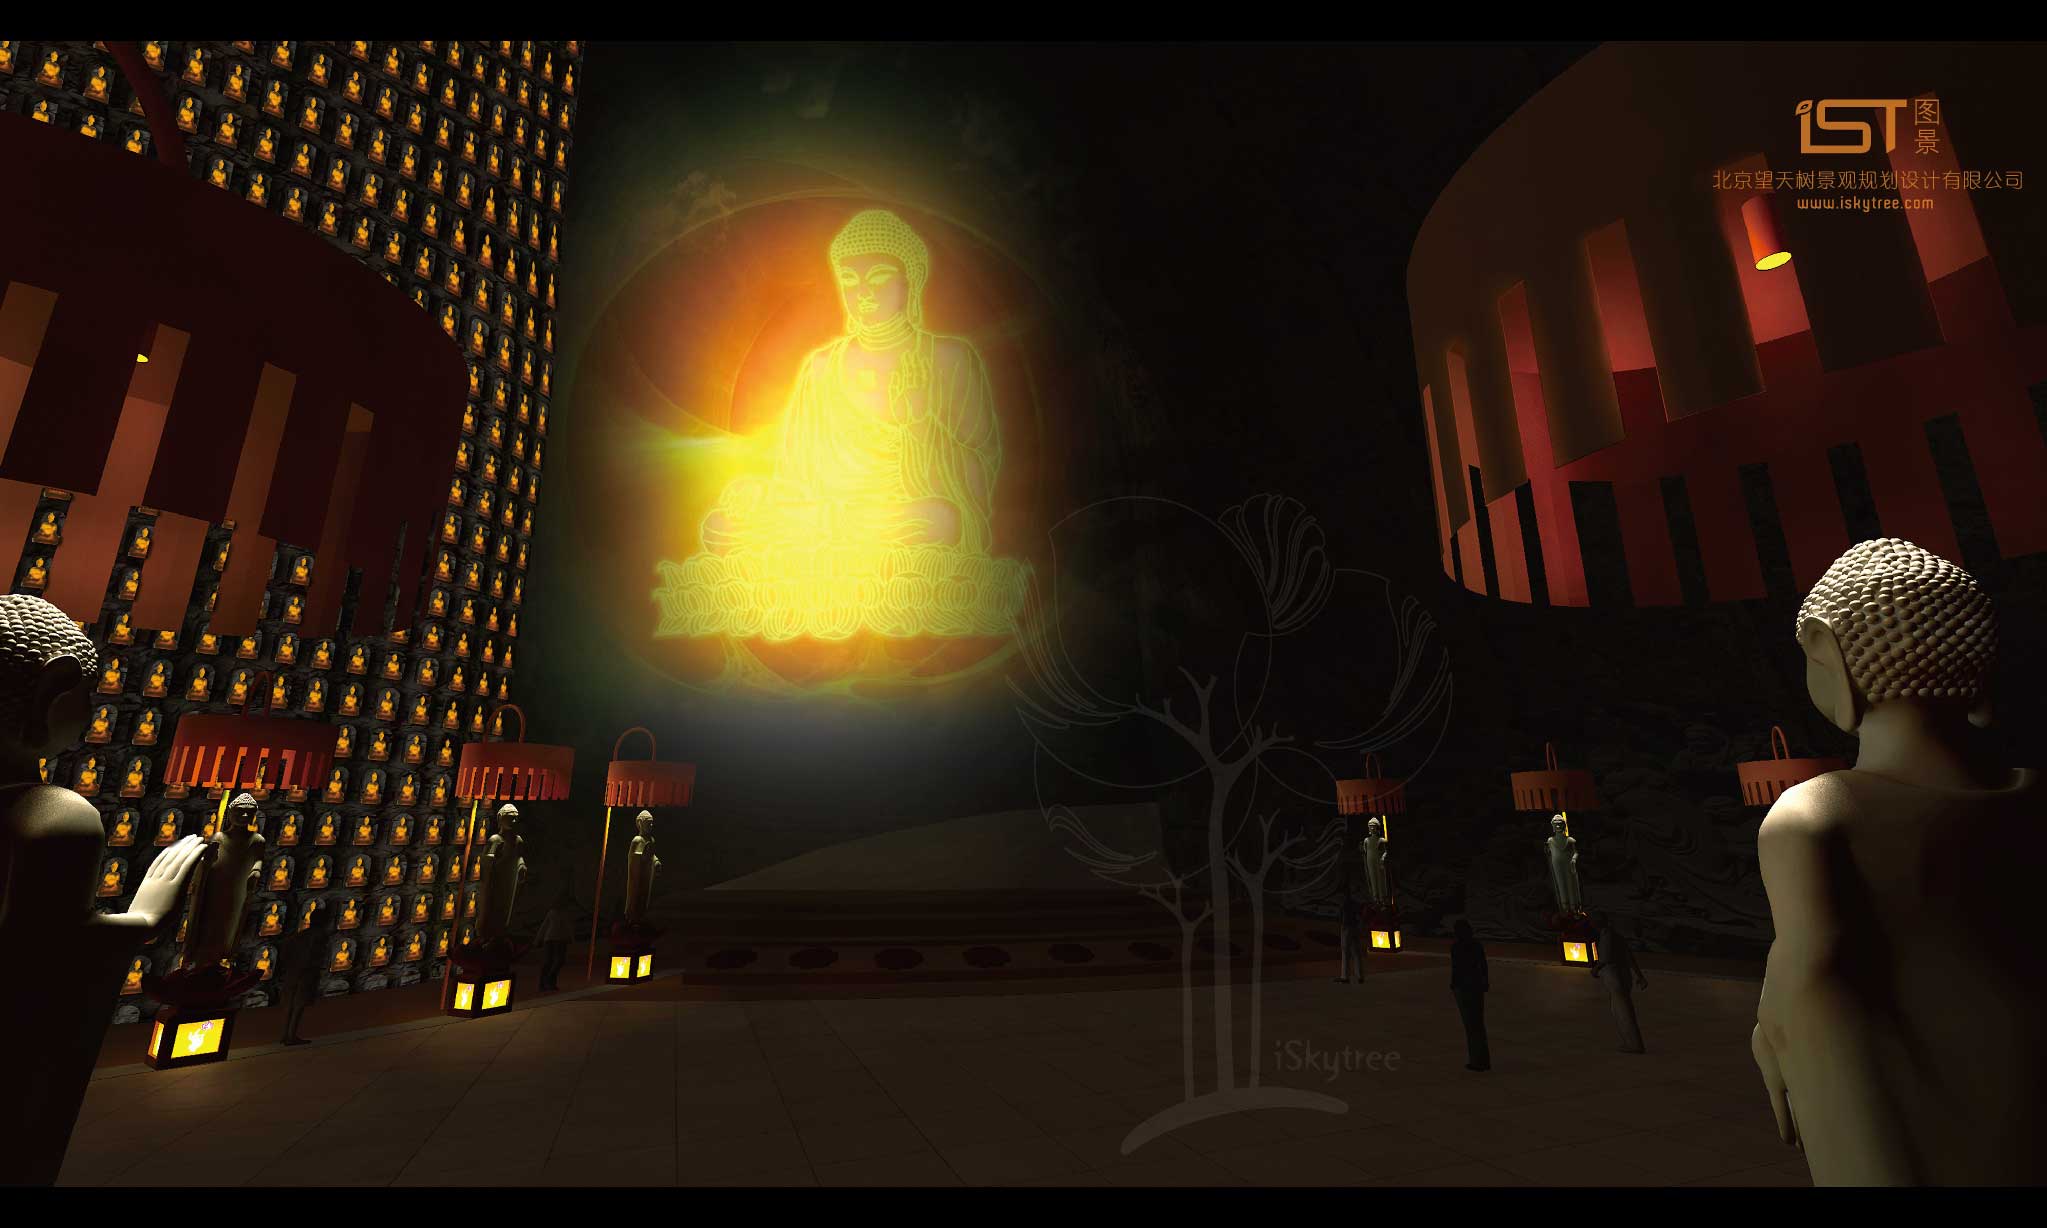 幻影成像的技術投射出的佛祖講經